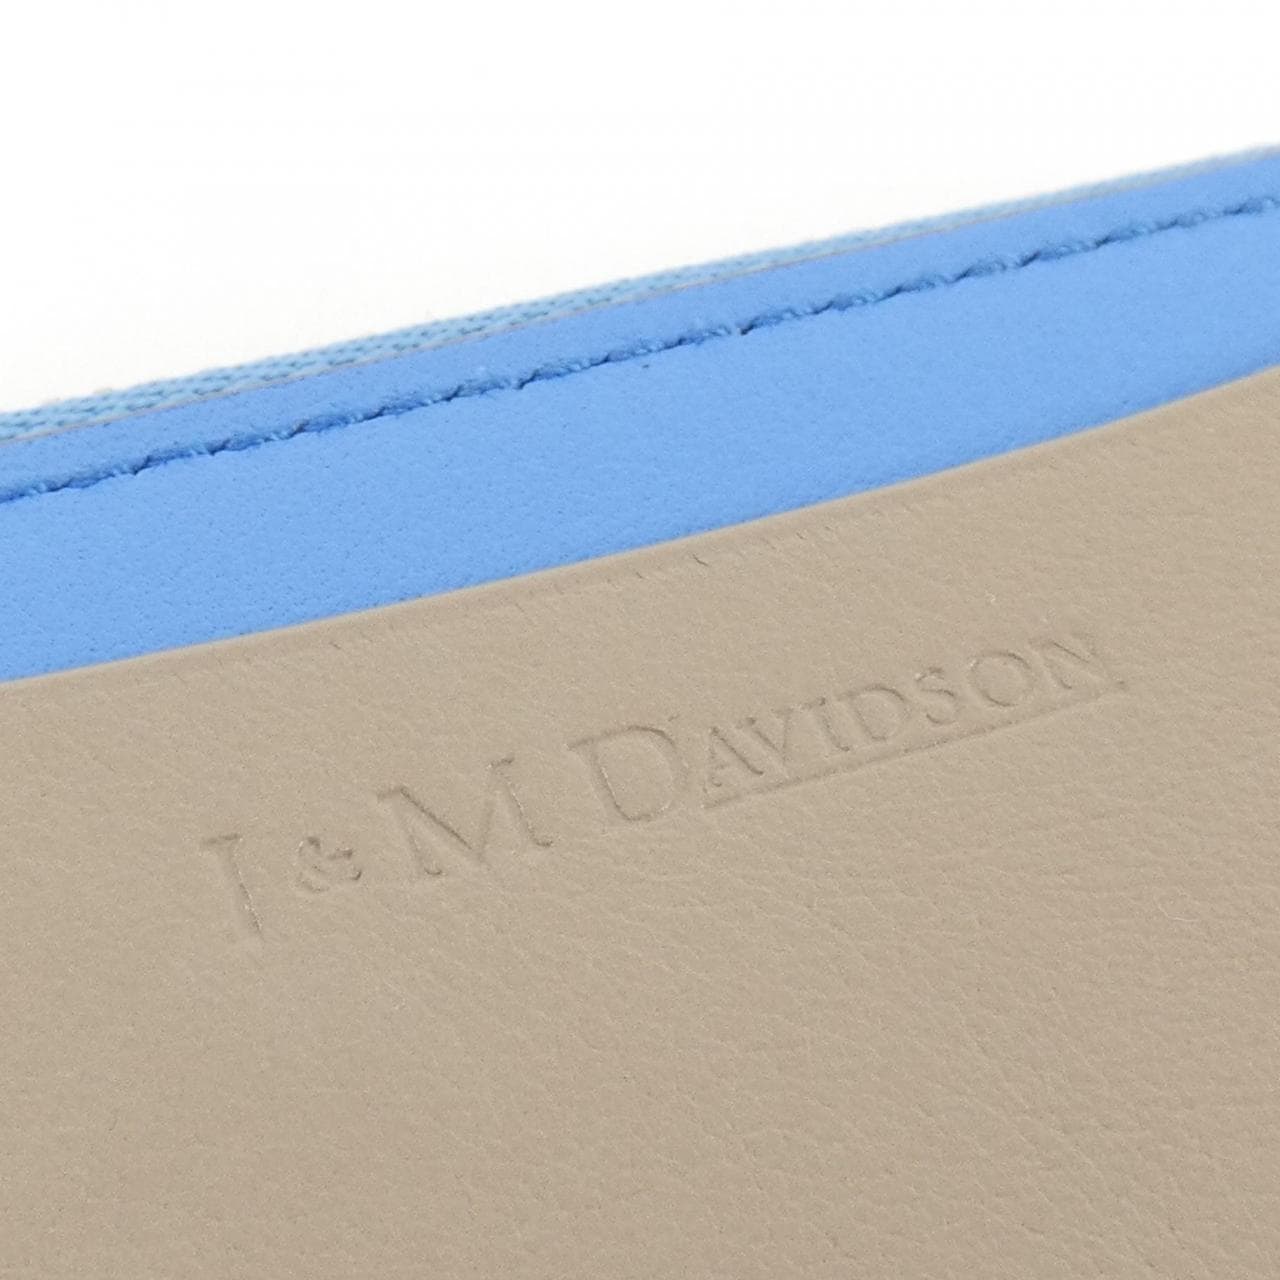 J&M Davidson J&M DAVIDSON CARD CASE